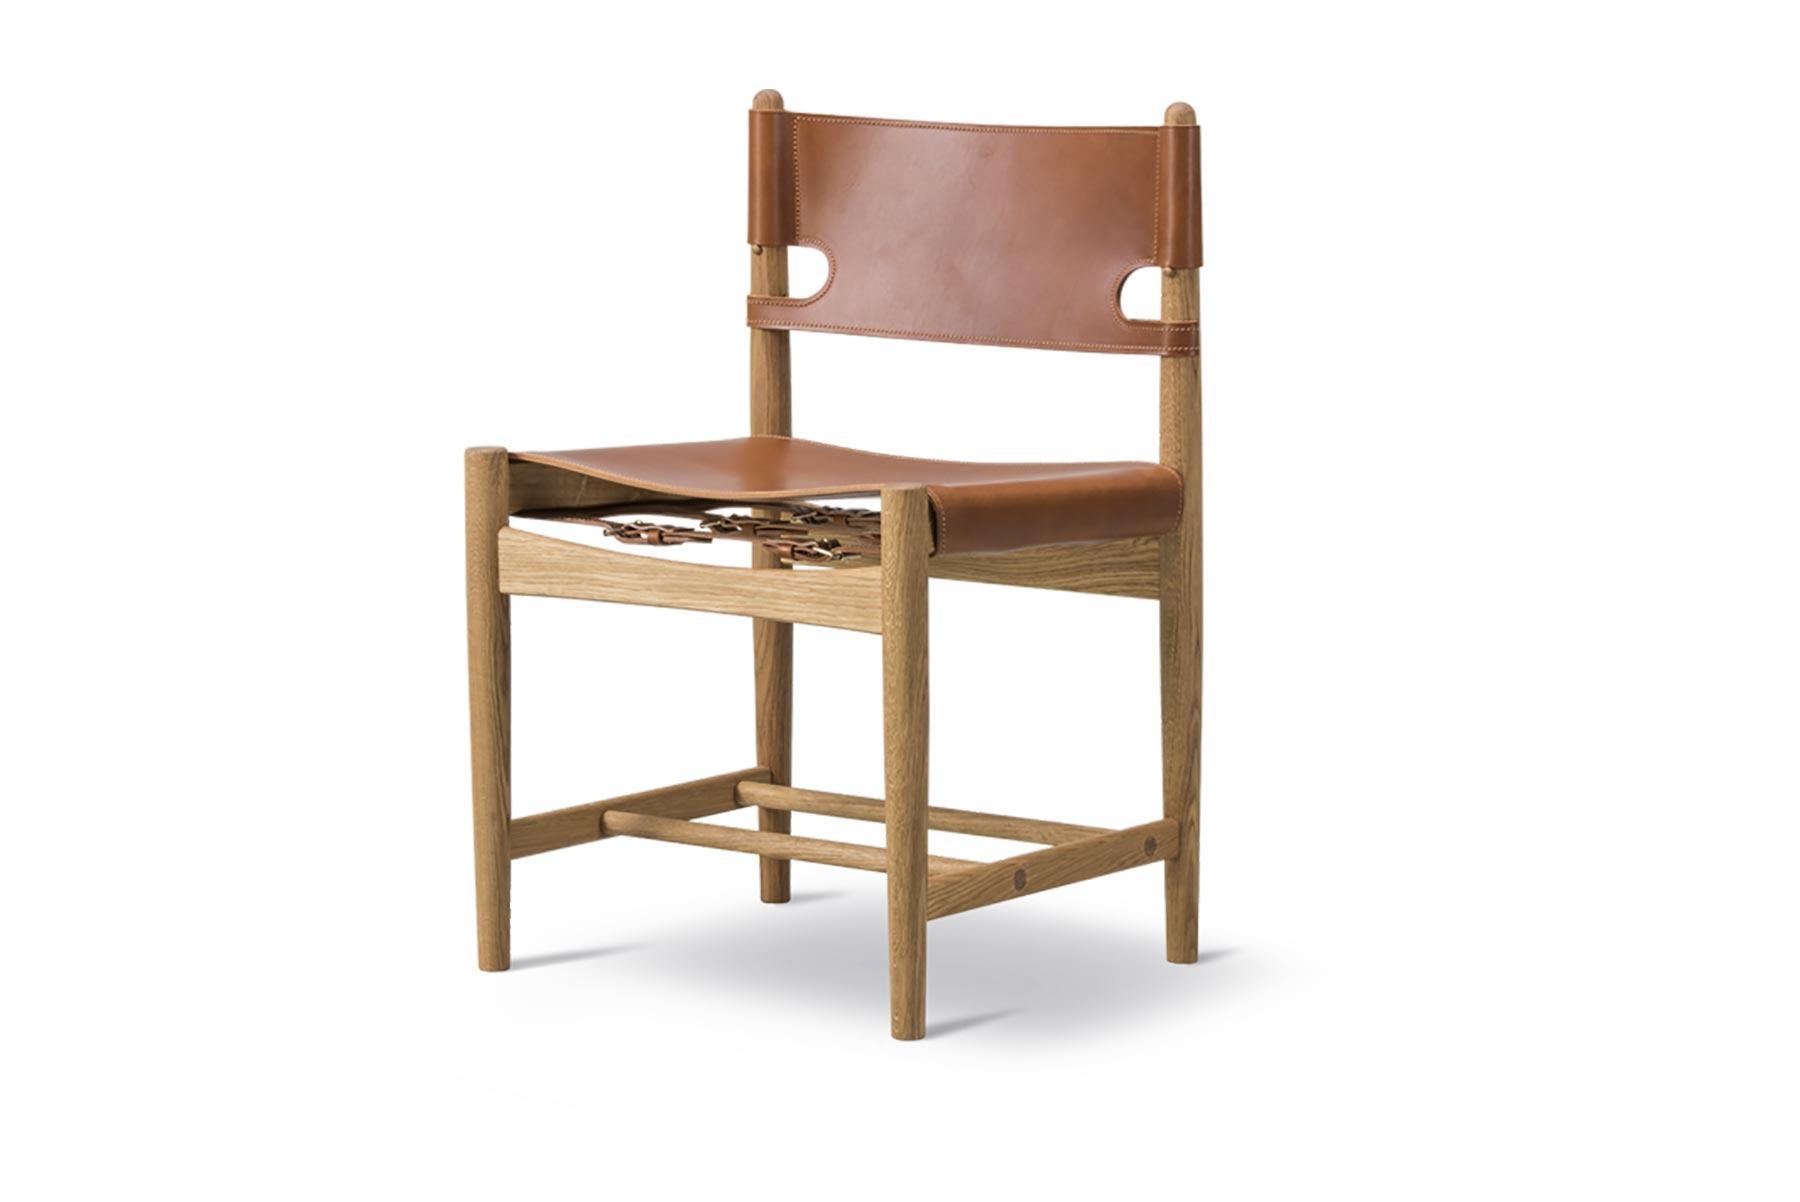 Der spanische Esszimmerstuhl ist ein Zeugnis für die Verwendung von ehrlichen Materialien. Der Stuhl ist aus feinstem Eichenholz und makellosem Sattelleder gefertigt und mit oder ohne Armlehnen sowie in verschiedenen Ausführungen von hellen bis